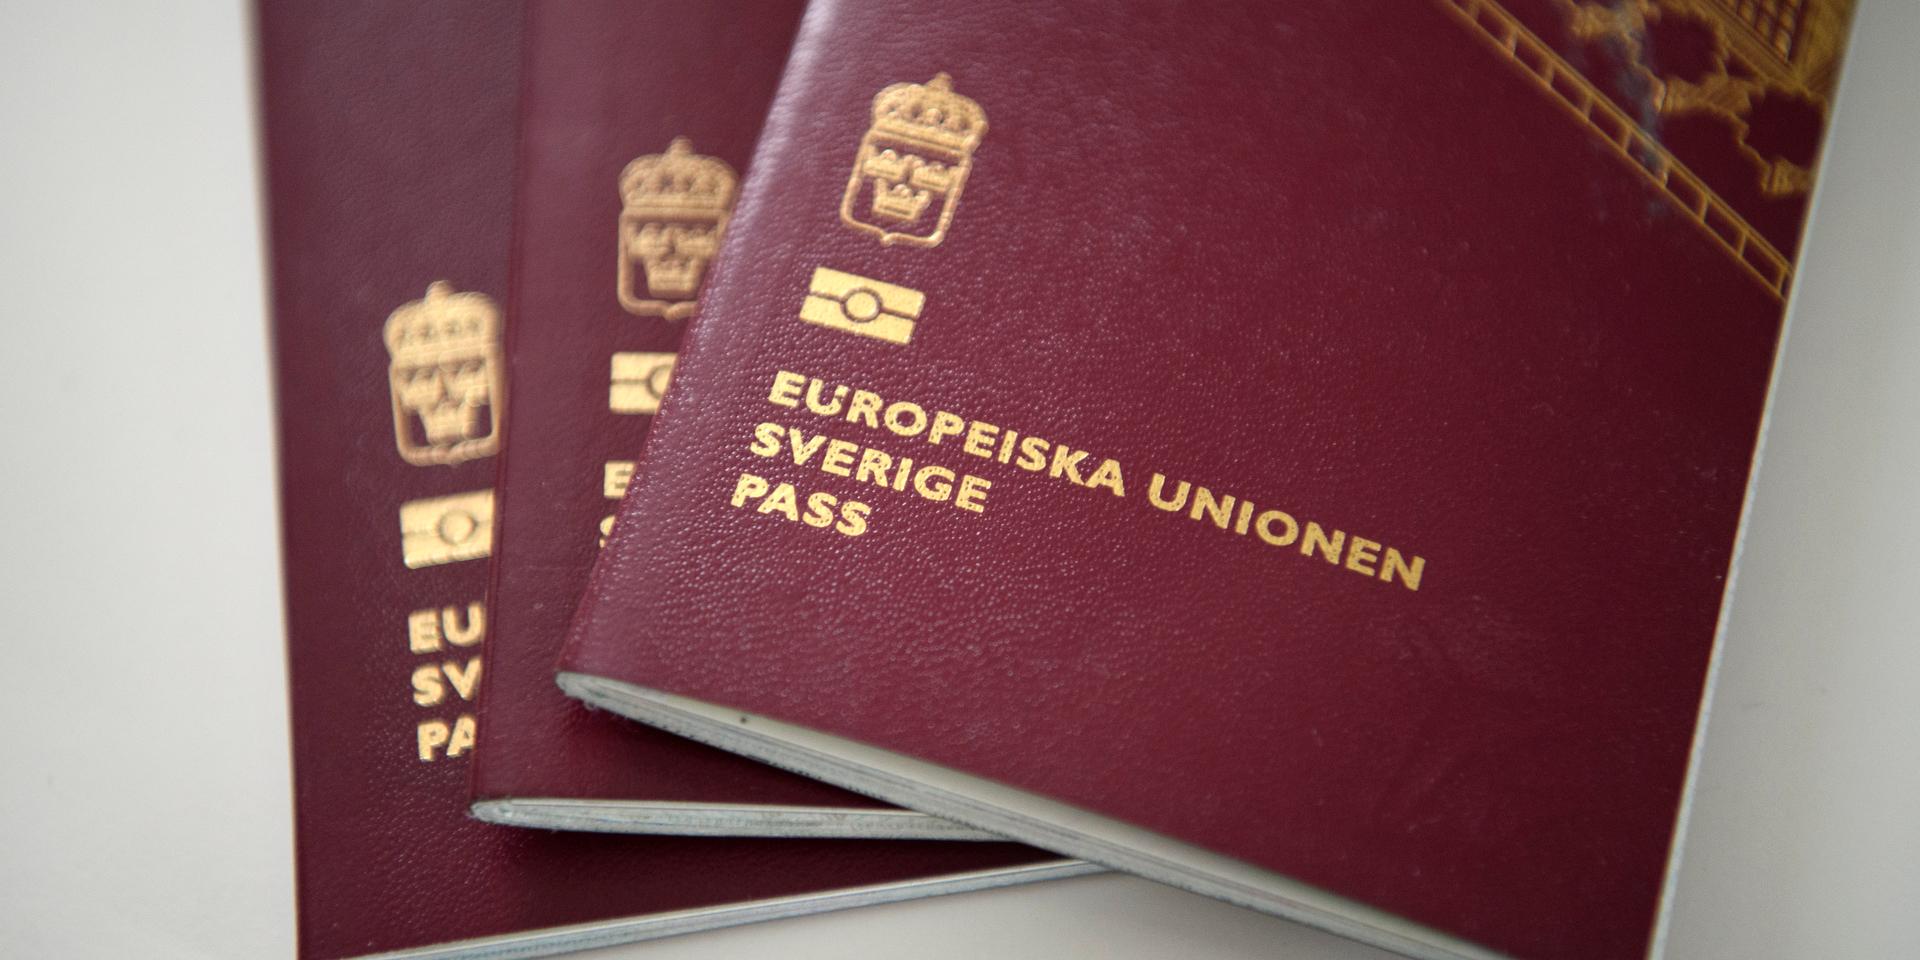 Just nu är det tre månaders väntetid för att boka pass i Göteborg. 